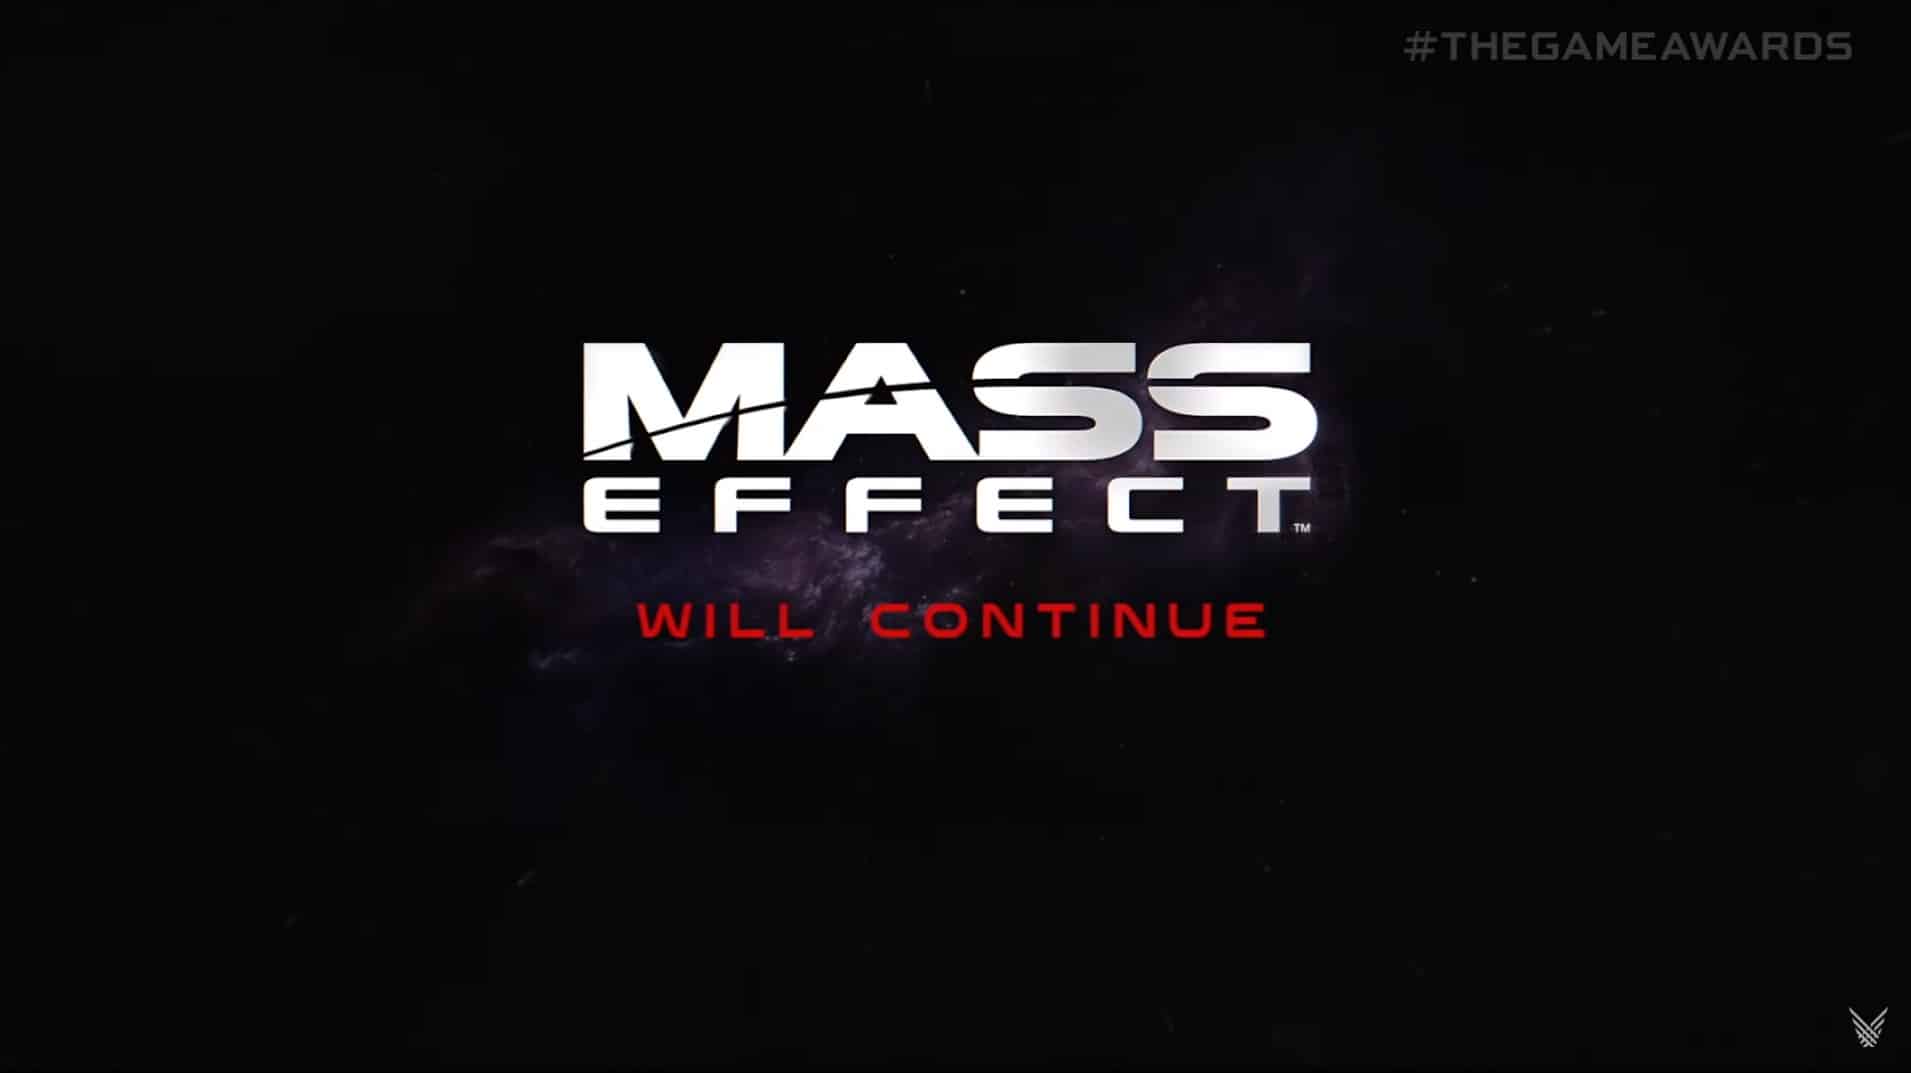 Mass Effect en The Game Awards, GamersRd